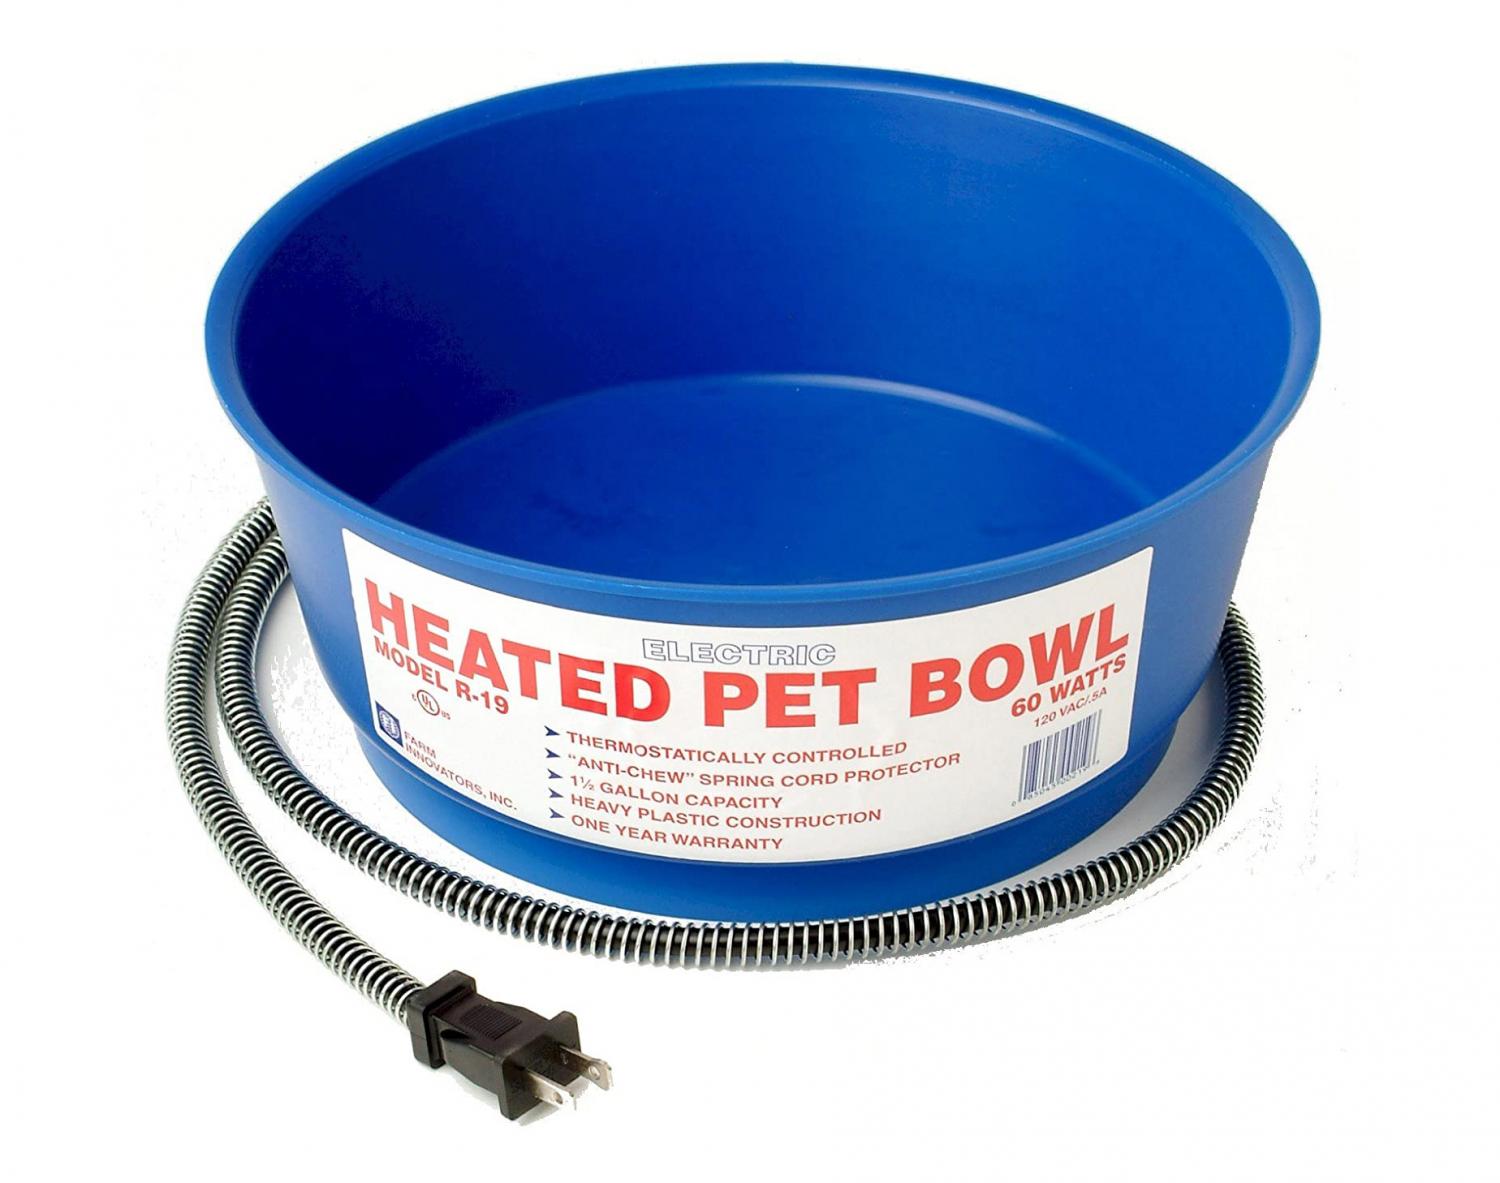 Heated Dog Bowl